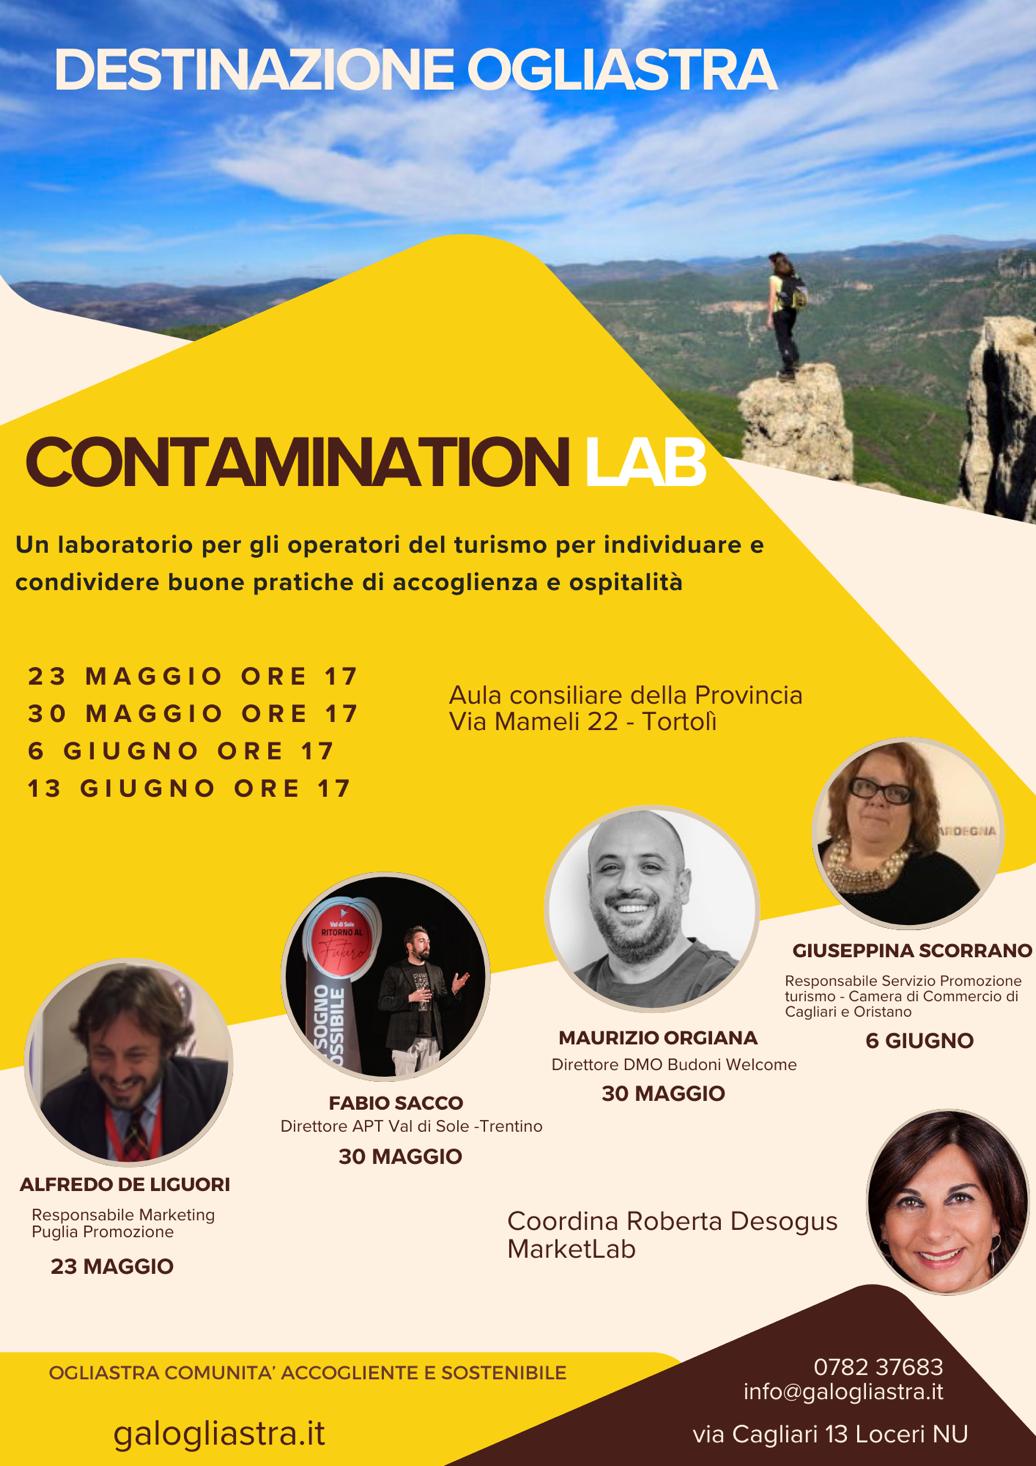 Gal Ogliastra: innovazione e accoglienza al centro dei Contamination LAB